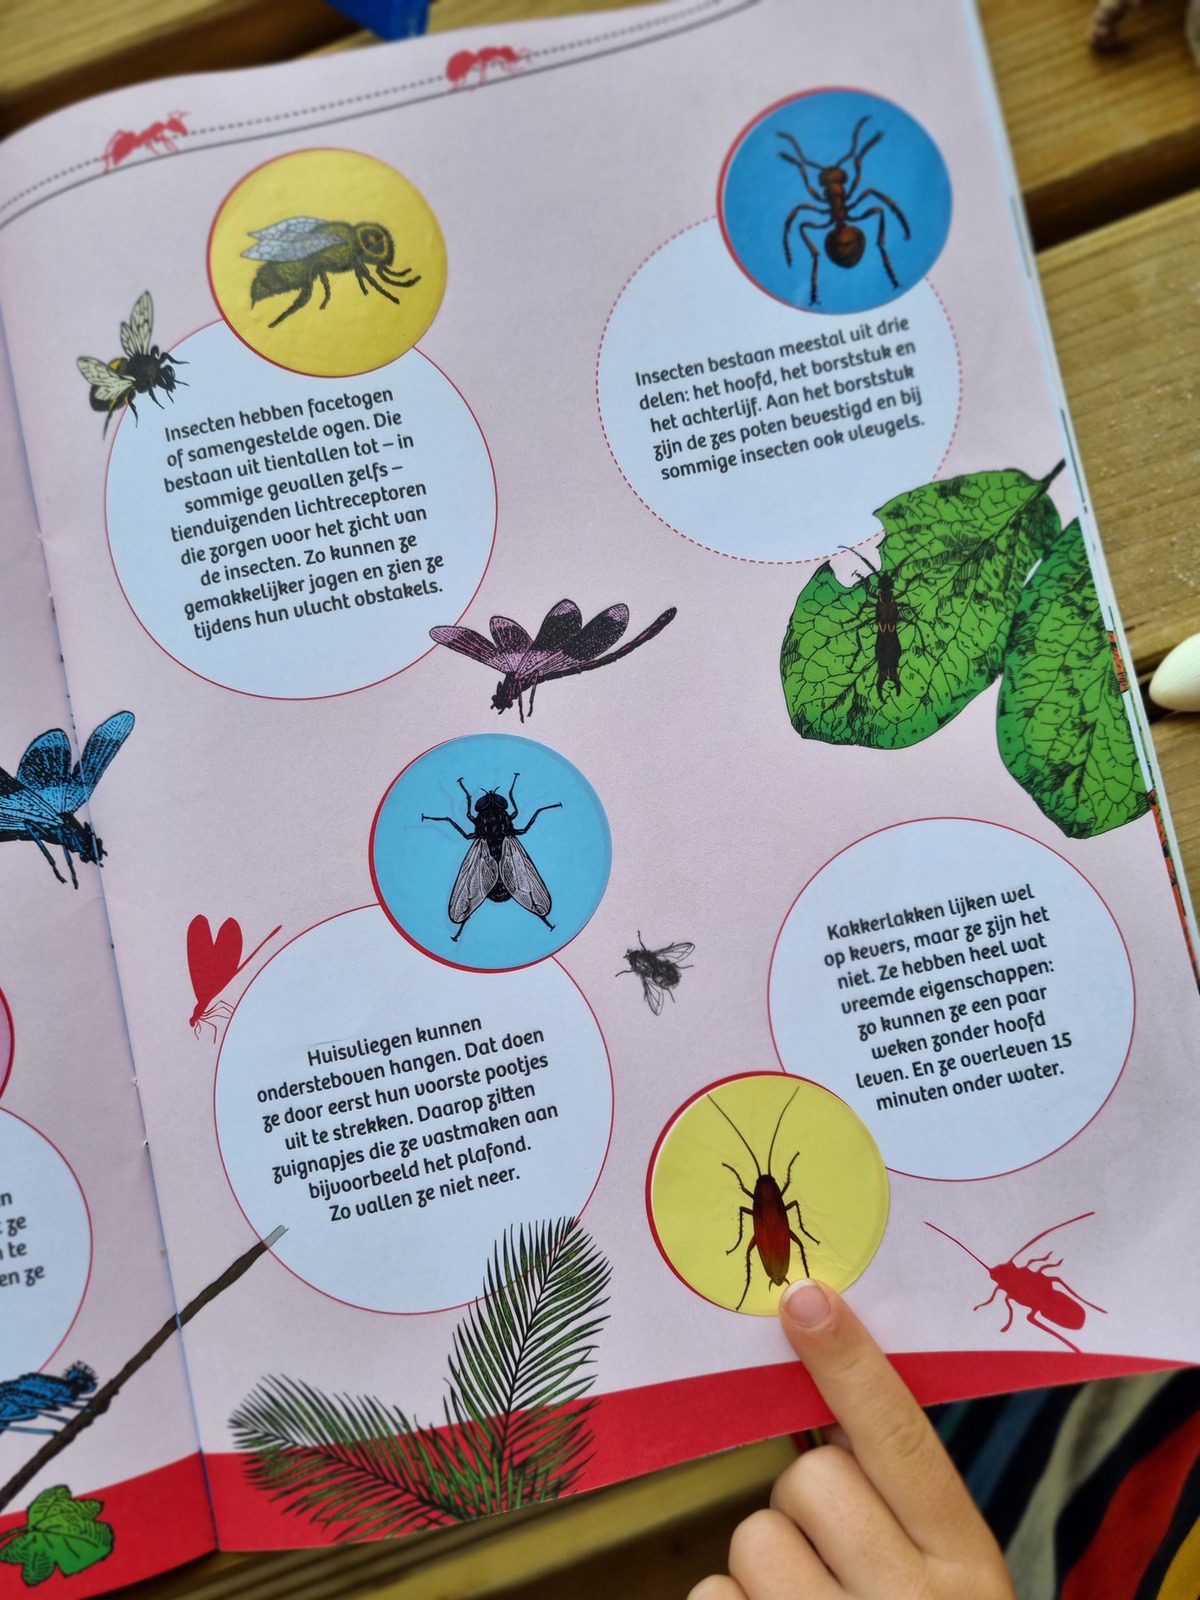 Hier kun je zien hoe het insectenboek Kriebeldiertjes er eruitziet als je het openslaat.